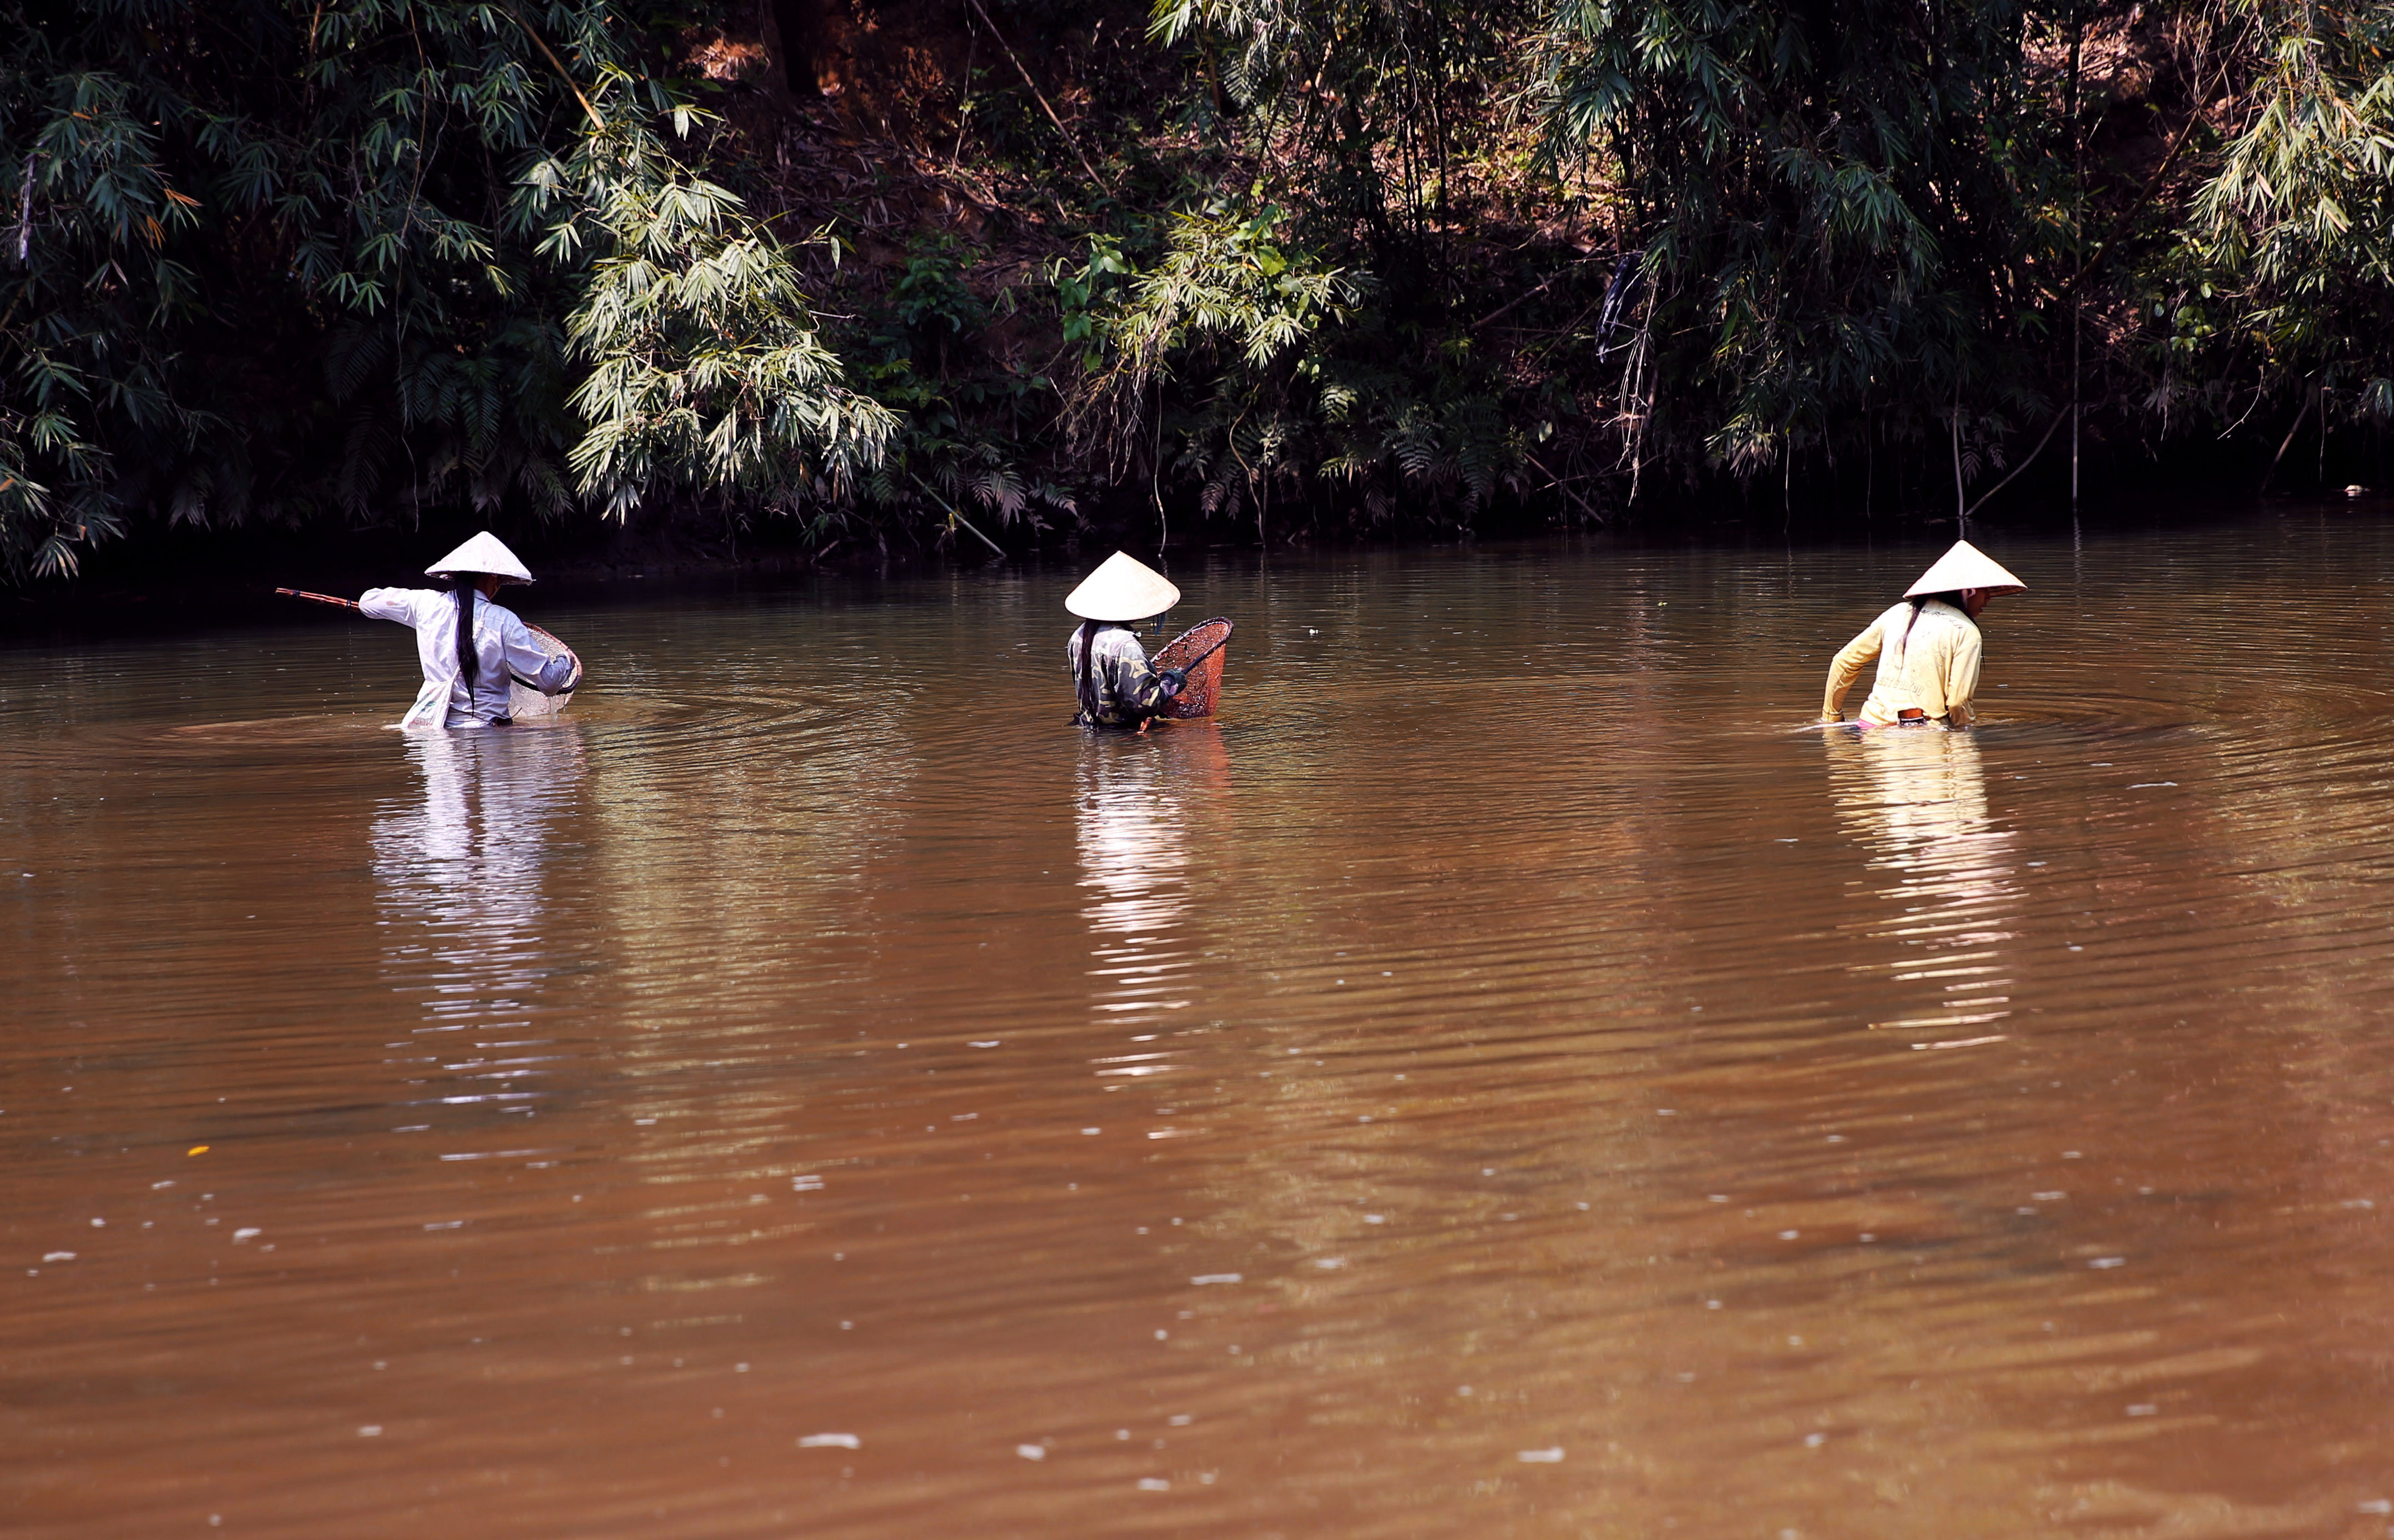 Cảnh lao động của những phụ nữ đánh cá trên sông Nậm Giả, huyện biên giới Quế Phong. Ảnh : Hồ Phương